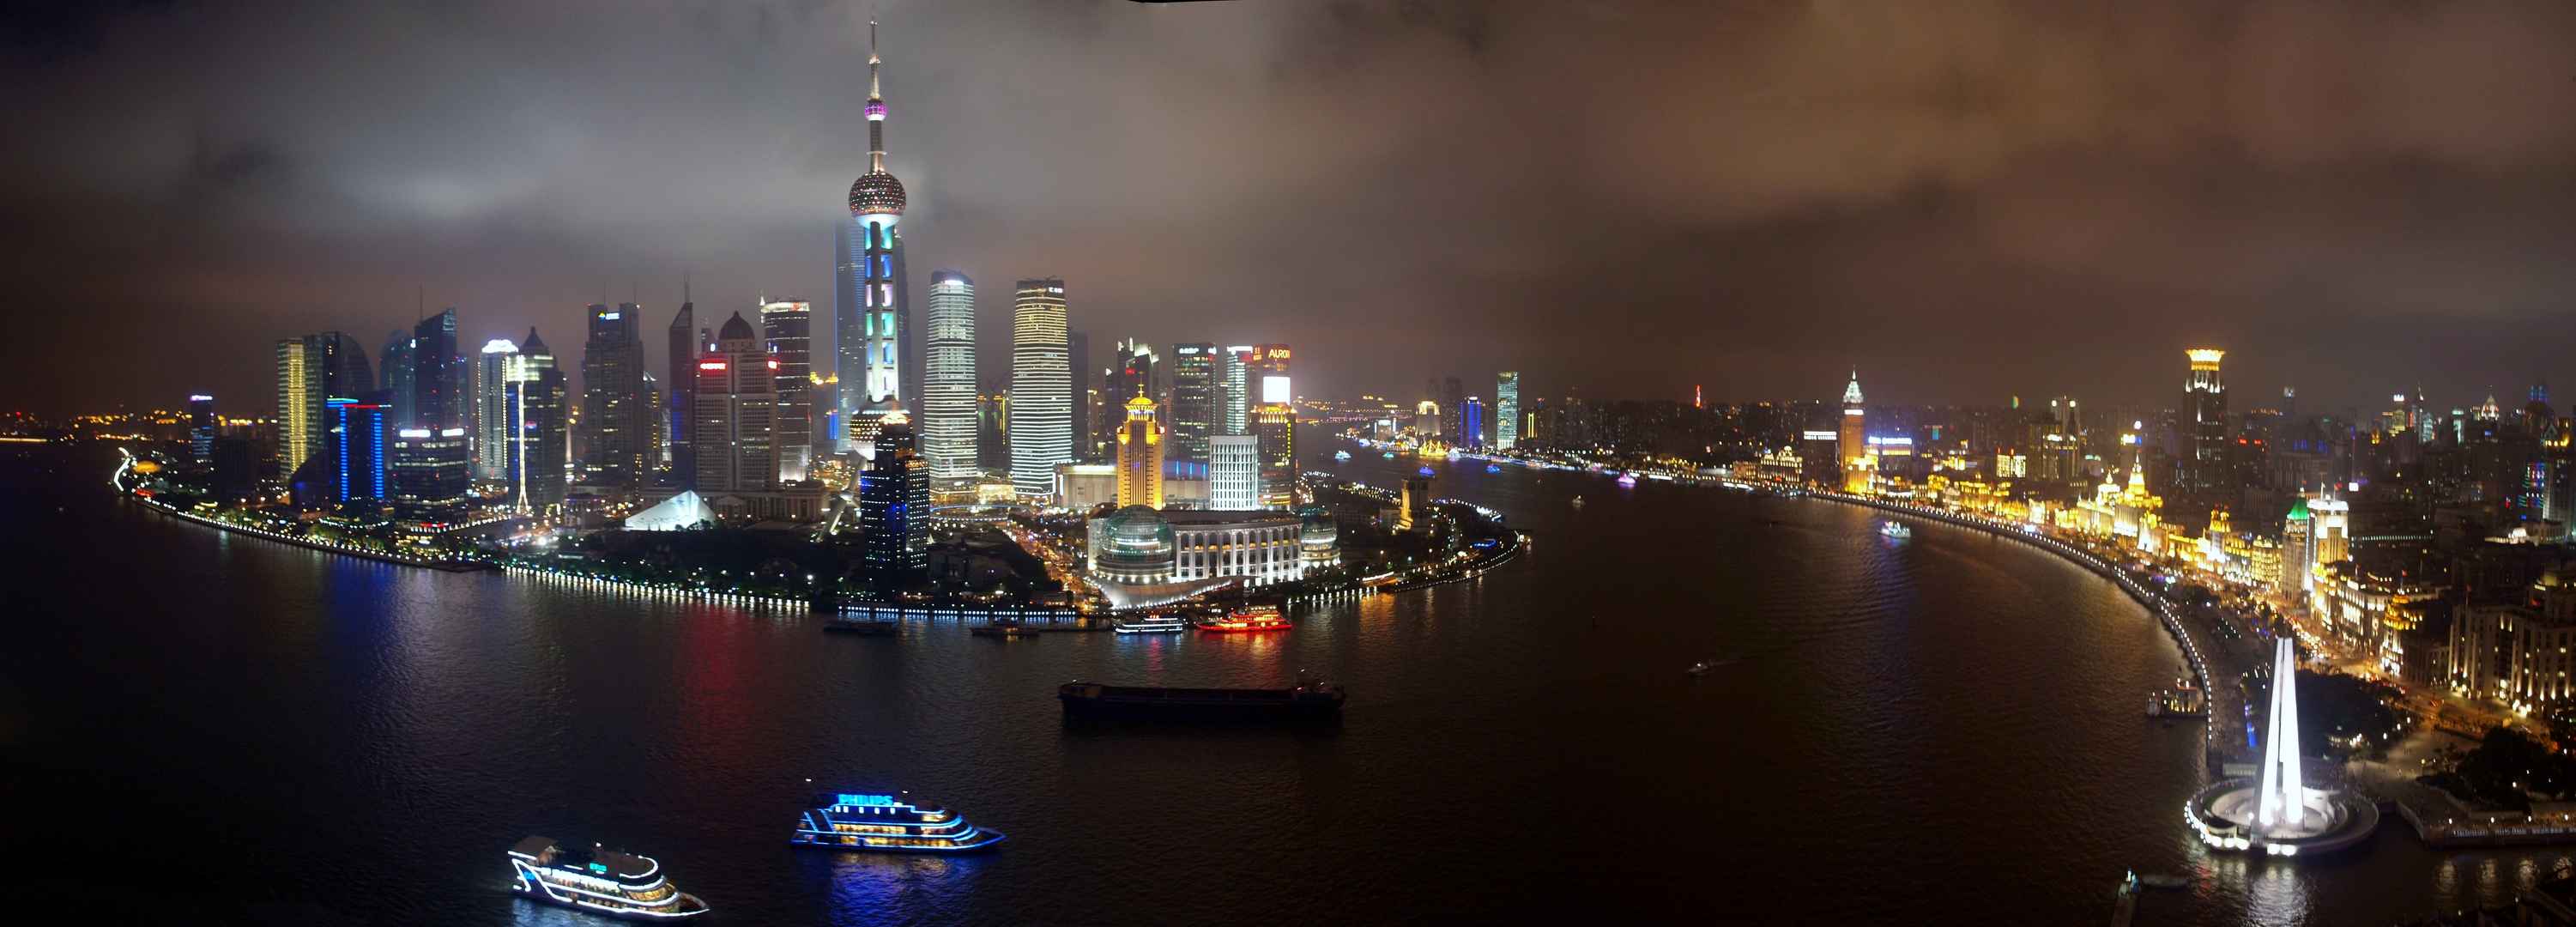 上海明珠夜景璀璨8K壁纸